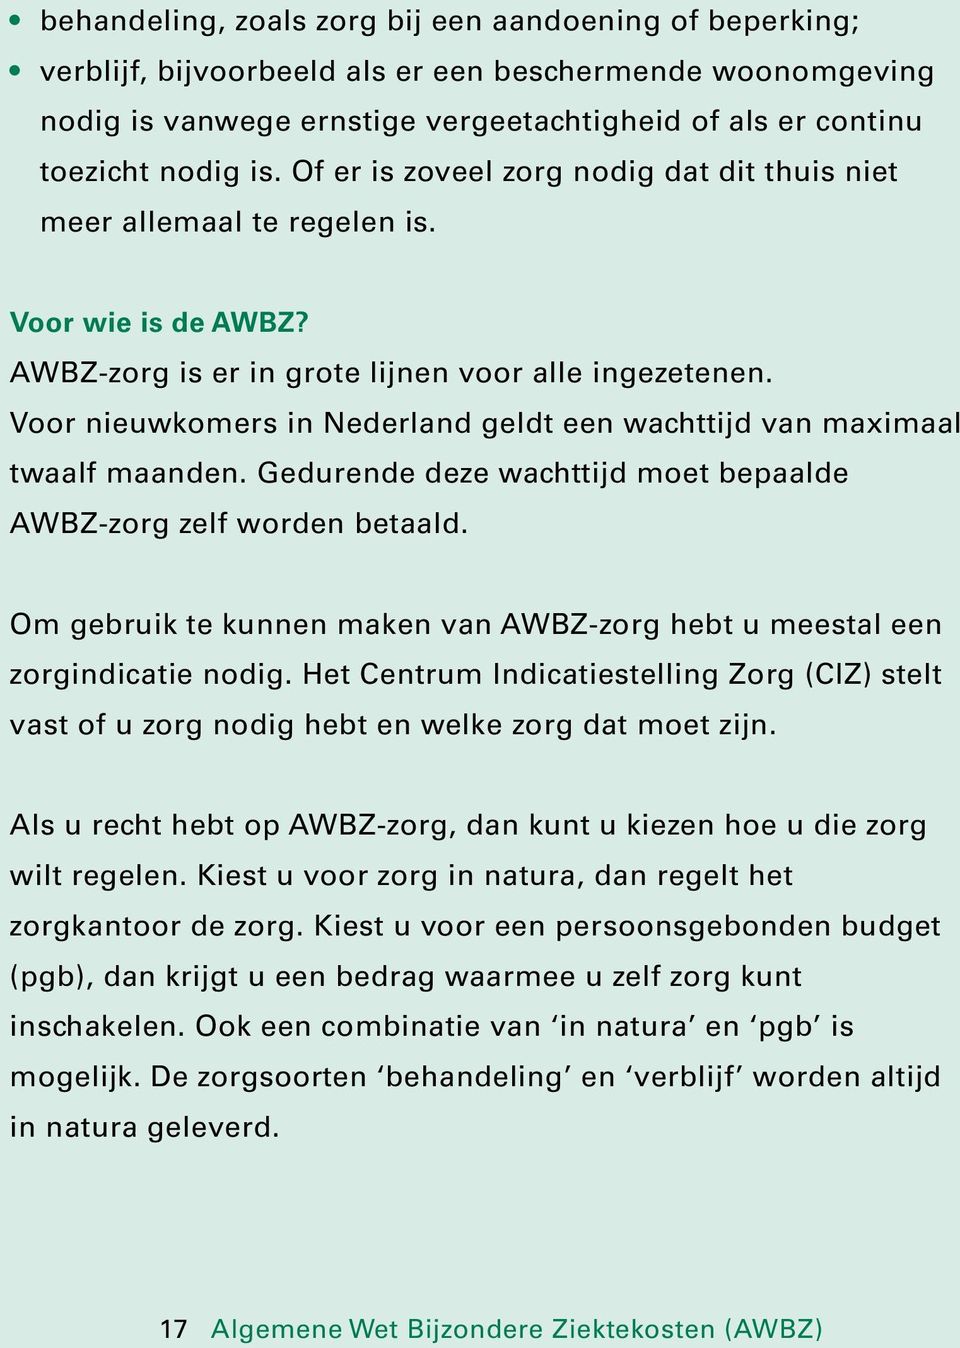 Voor nieuwkomers in Nederland geldt een wachttijd van maximaal twaalf maanden. Gedurende deze wachttijd moet bepaalde AWBZ-zorg zelf worden betaald.